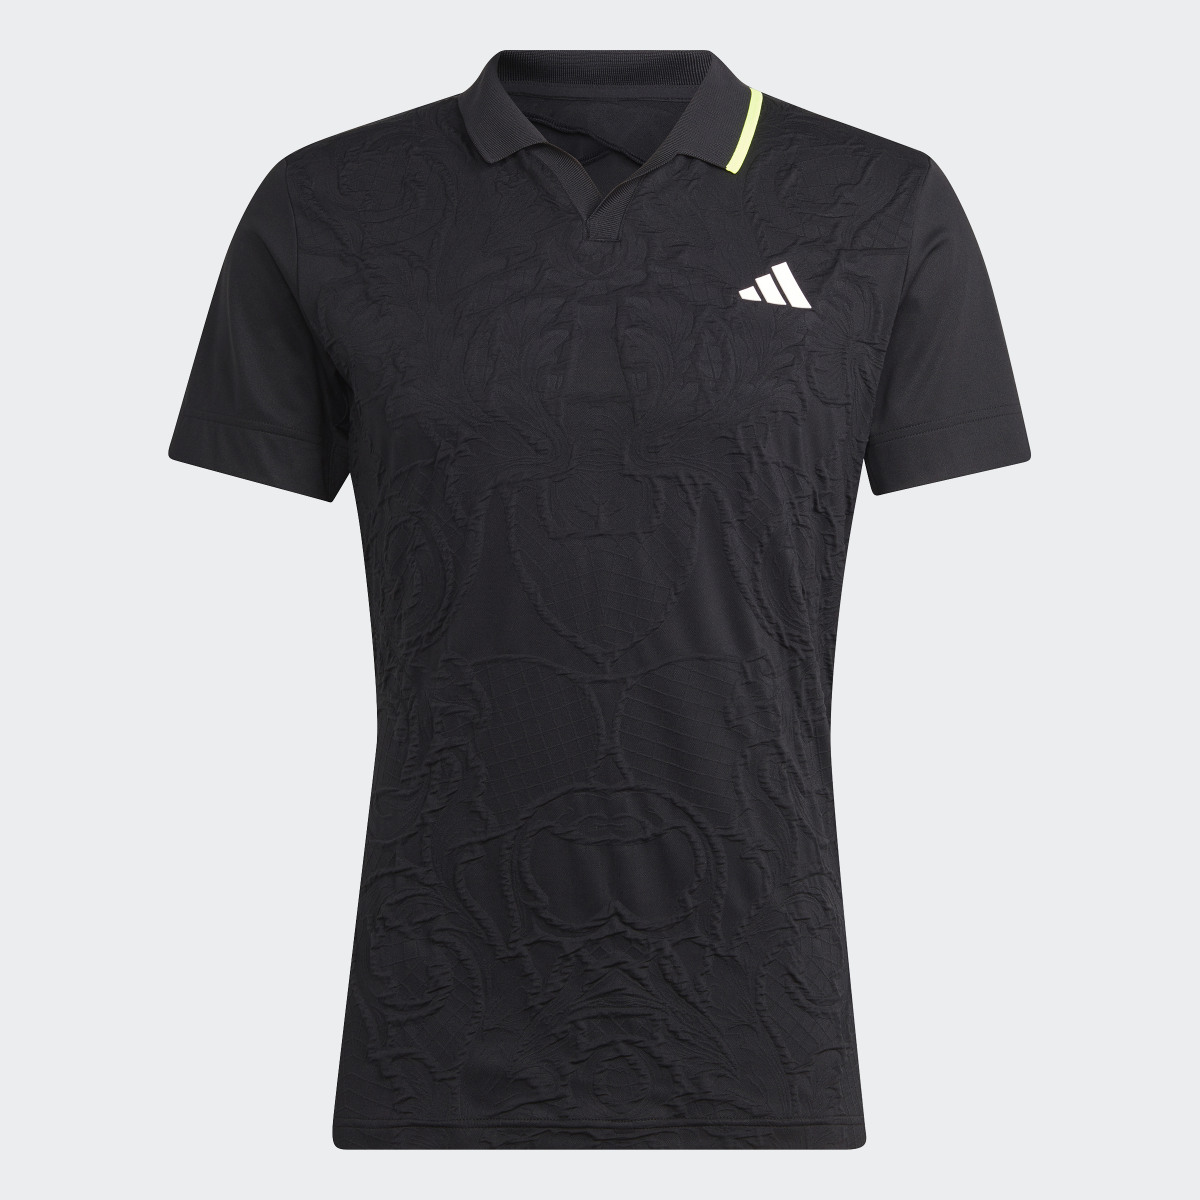 Adidas AEROREADY FreeLift Pro Tennis Polo Shirt. 5